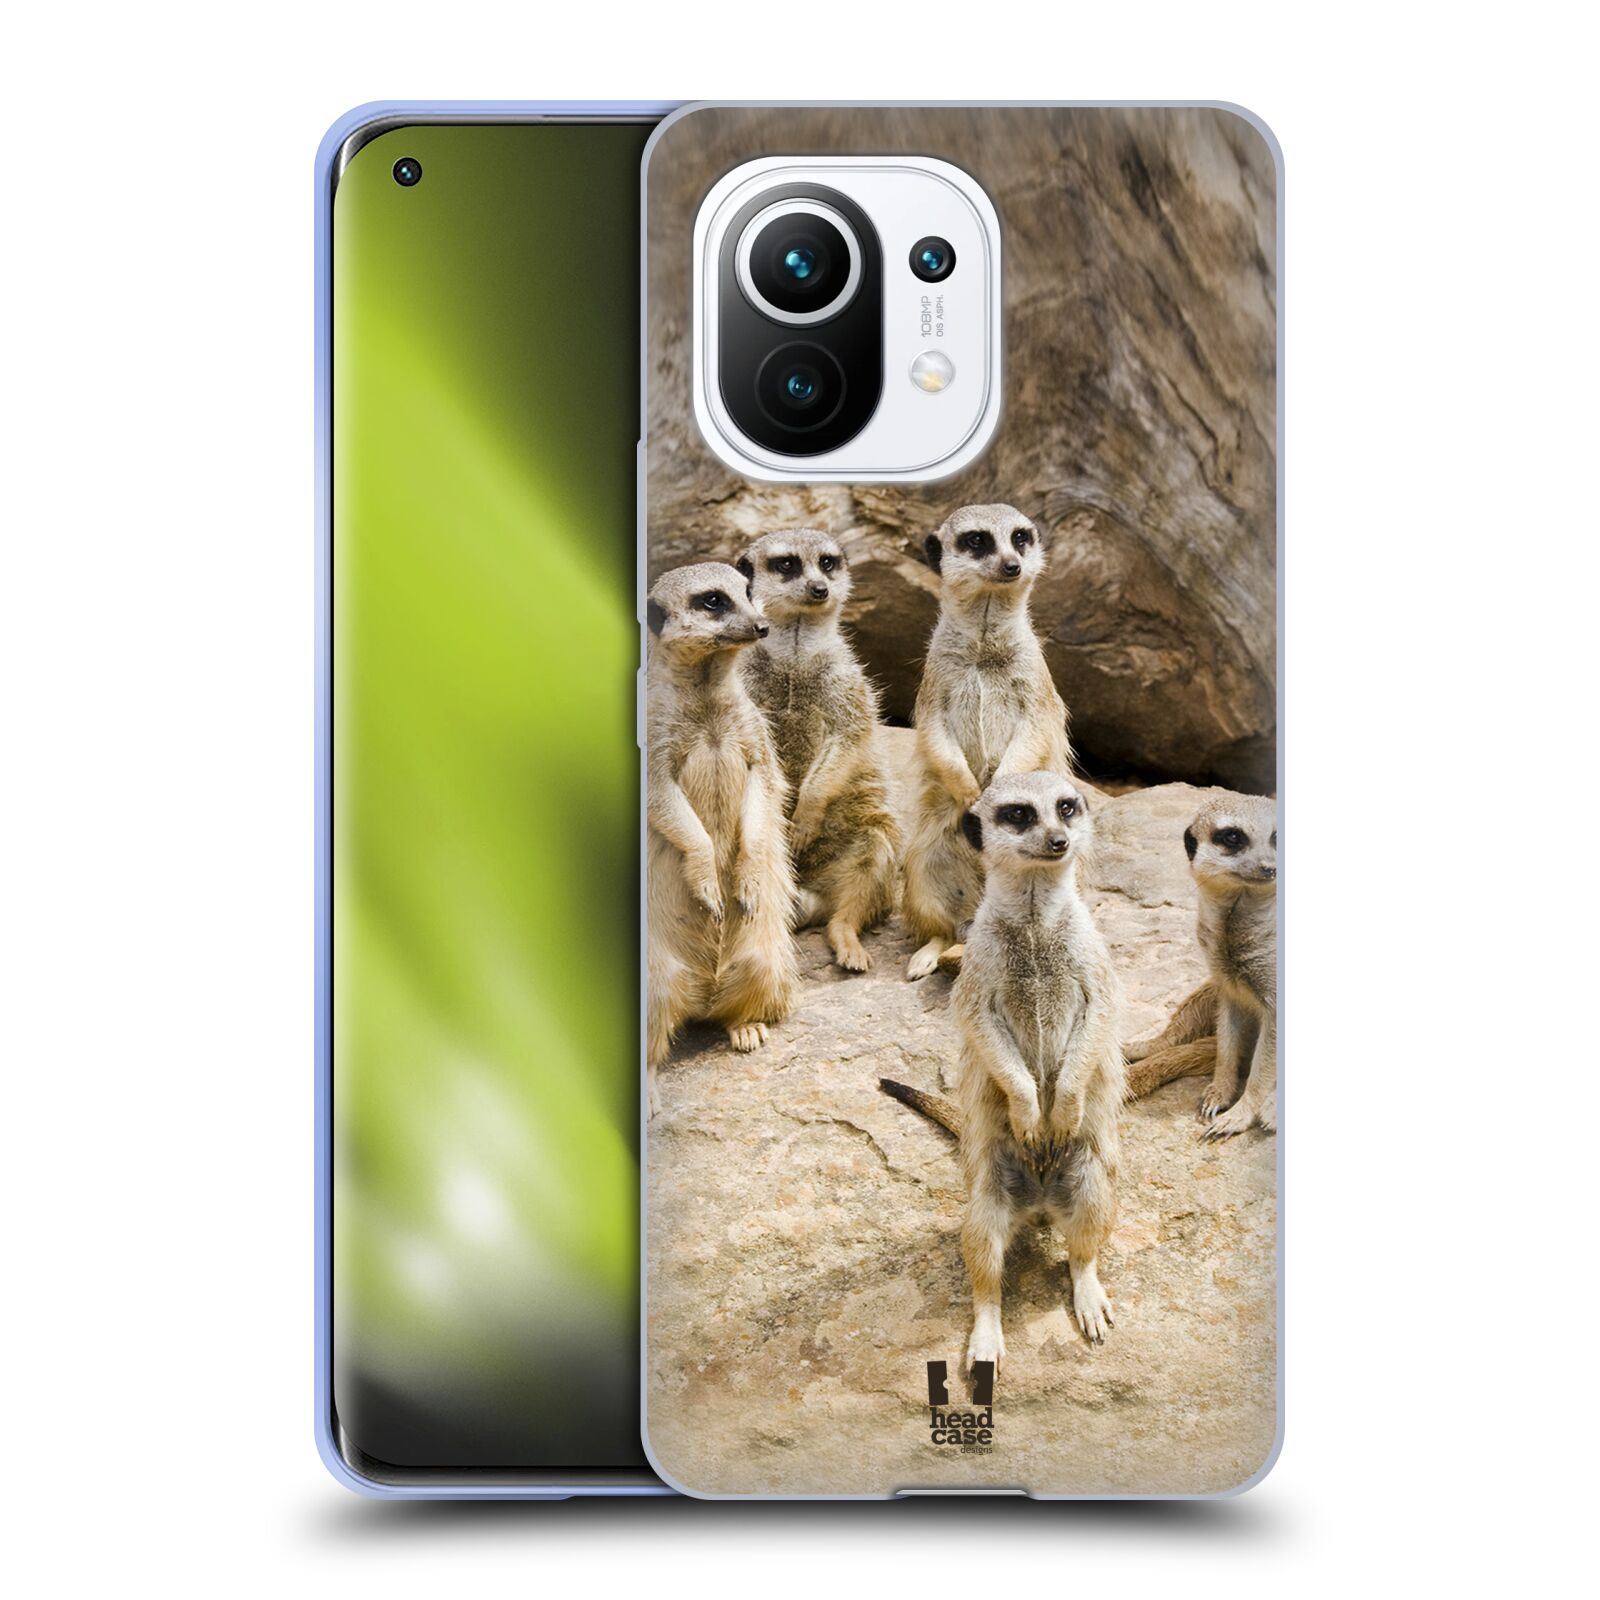 Plastový obal HEAD CASE na mobil Xiaomi Mi 11 vzor Divočina, Divoký život a zvířata foto SURIKATA